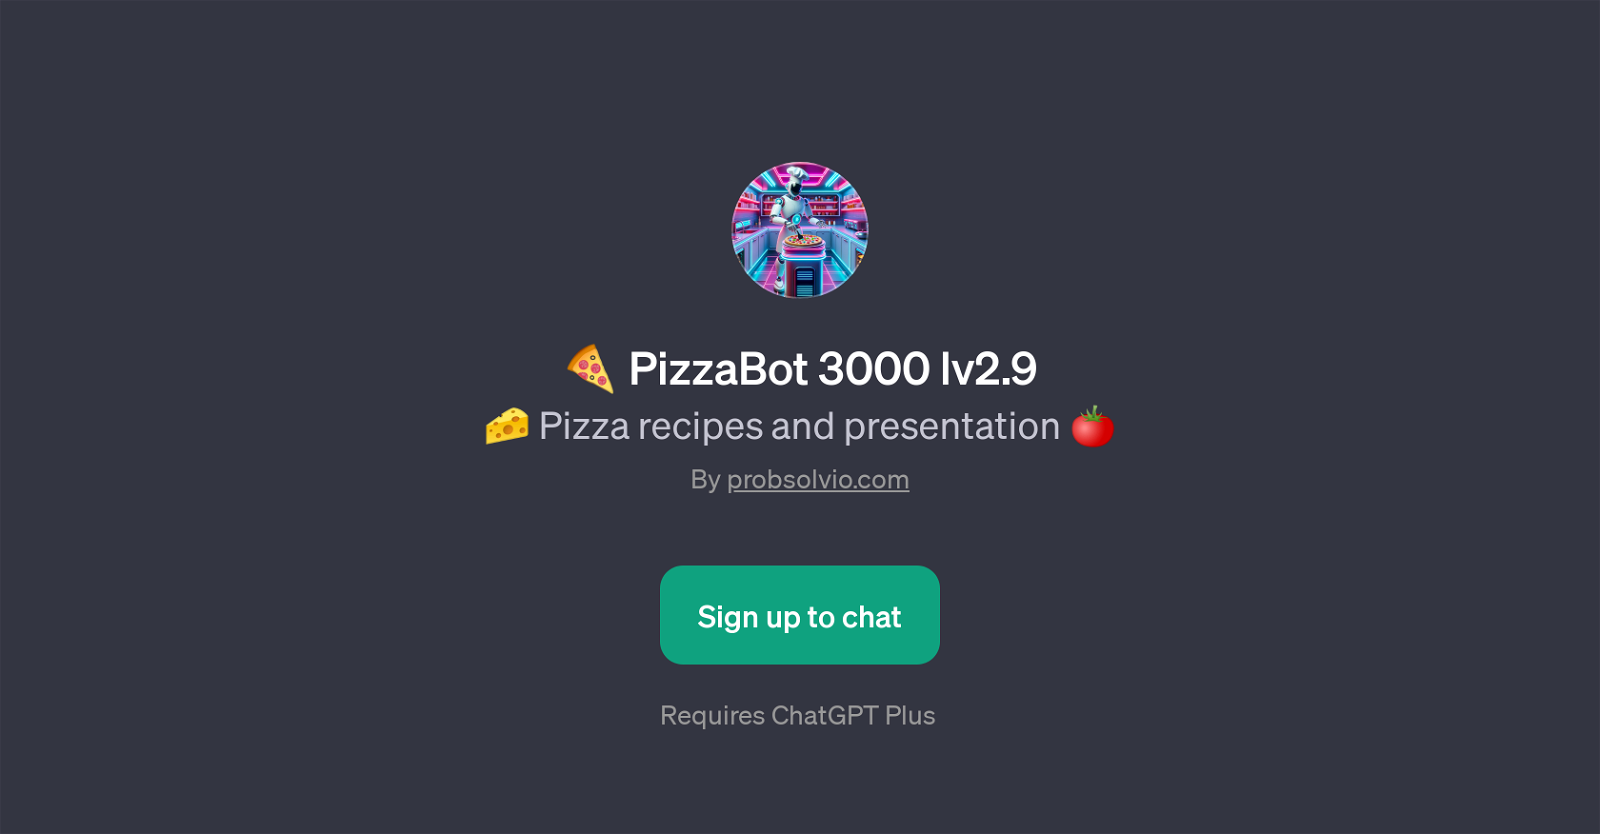 PizzaBot 3000 lv2.9 website